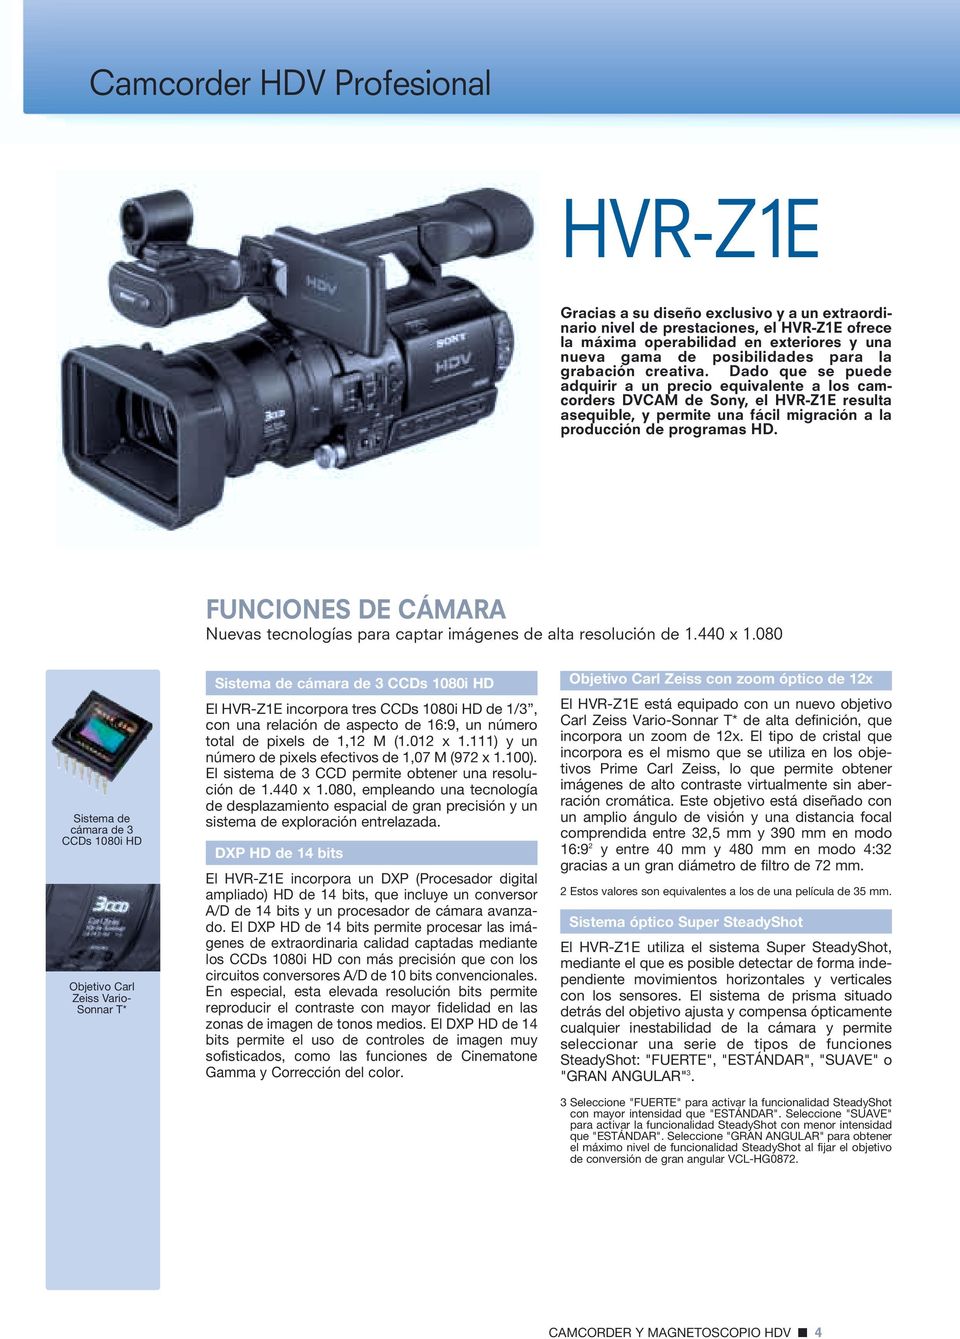 Dado que se puede adquirir a un precio equivalente a los camcorders DVCAM de Sony, el HVR-Z1E resulta asequible, y permite una fácil migración a la producción de programas HD.